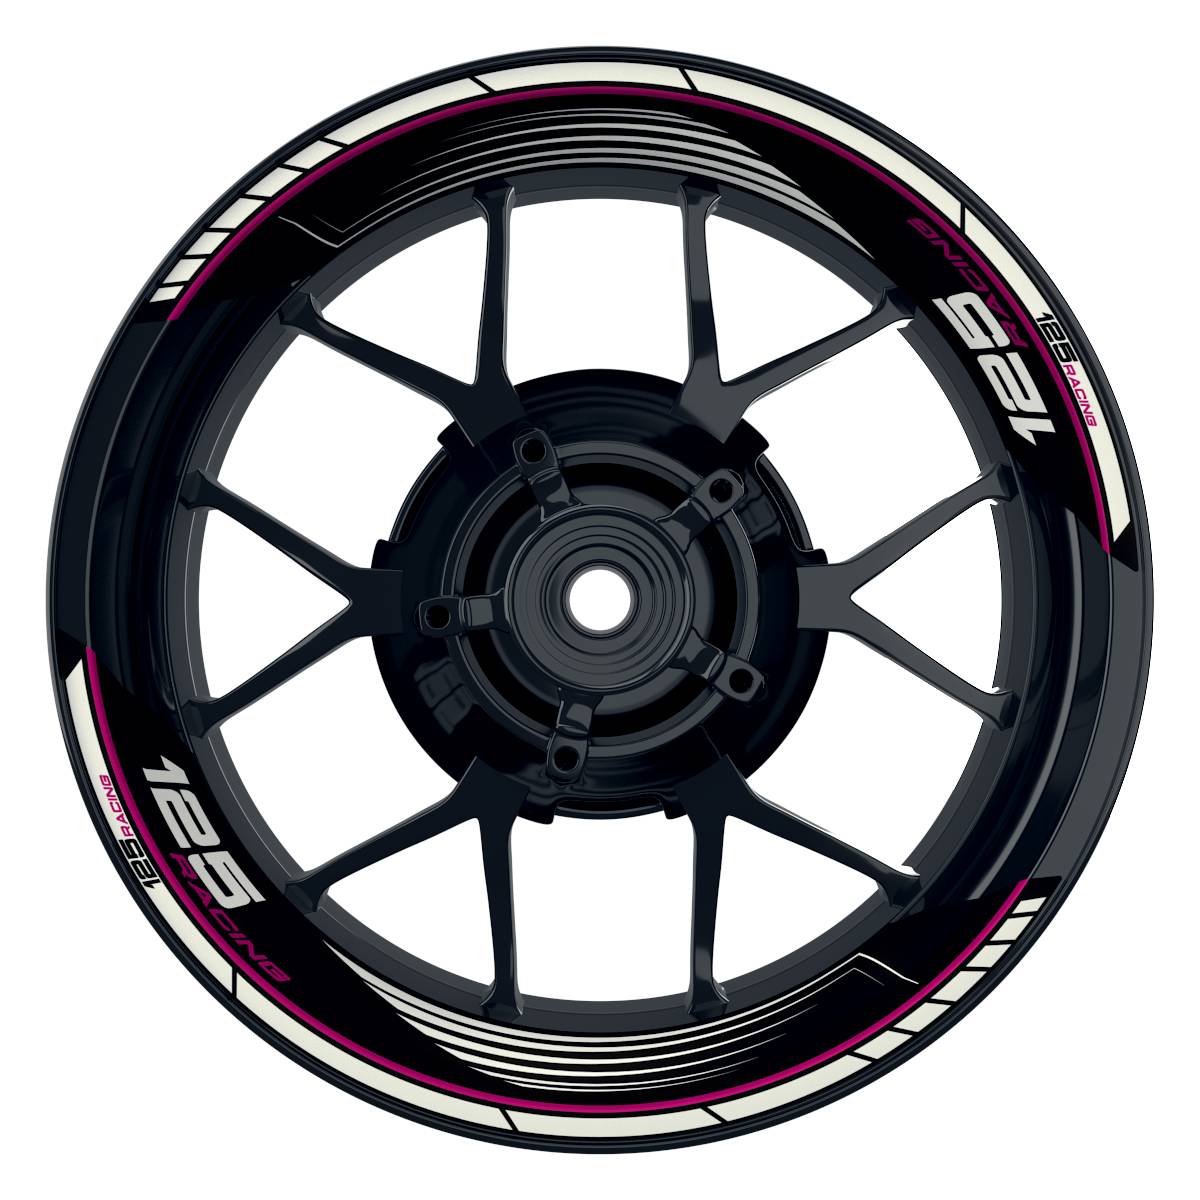 KTM Racing 125 SAW schwarz pink Frontansicht